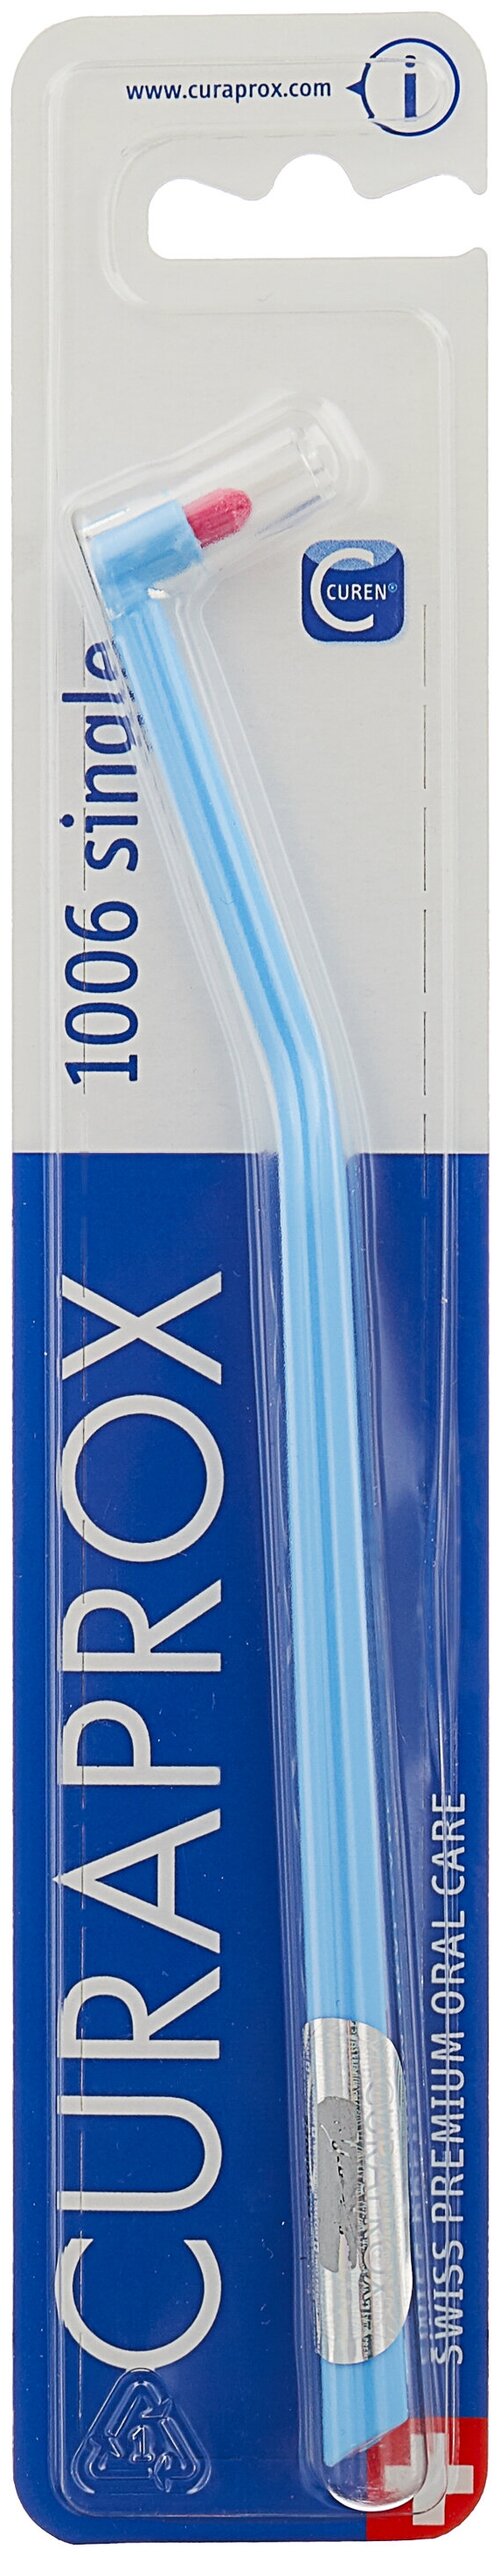 Зубная щетка Curaprox CS 1006 single, светло-голубой, диаметр щетинок 0.1 мм